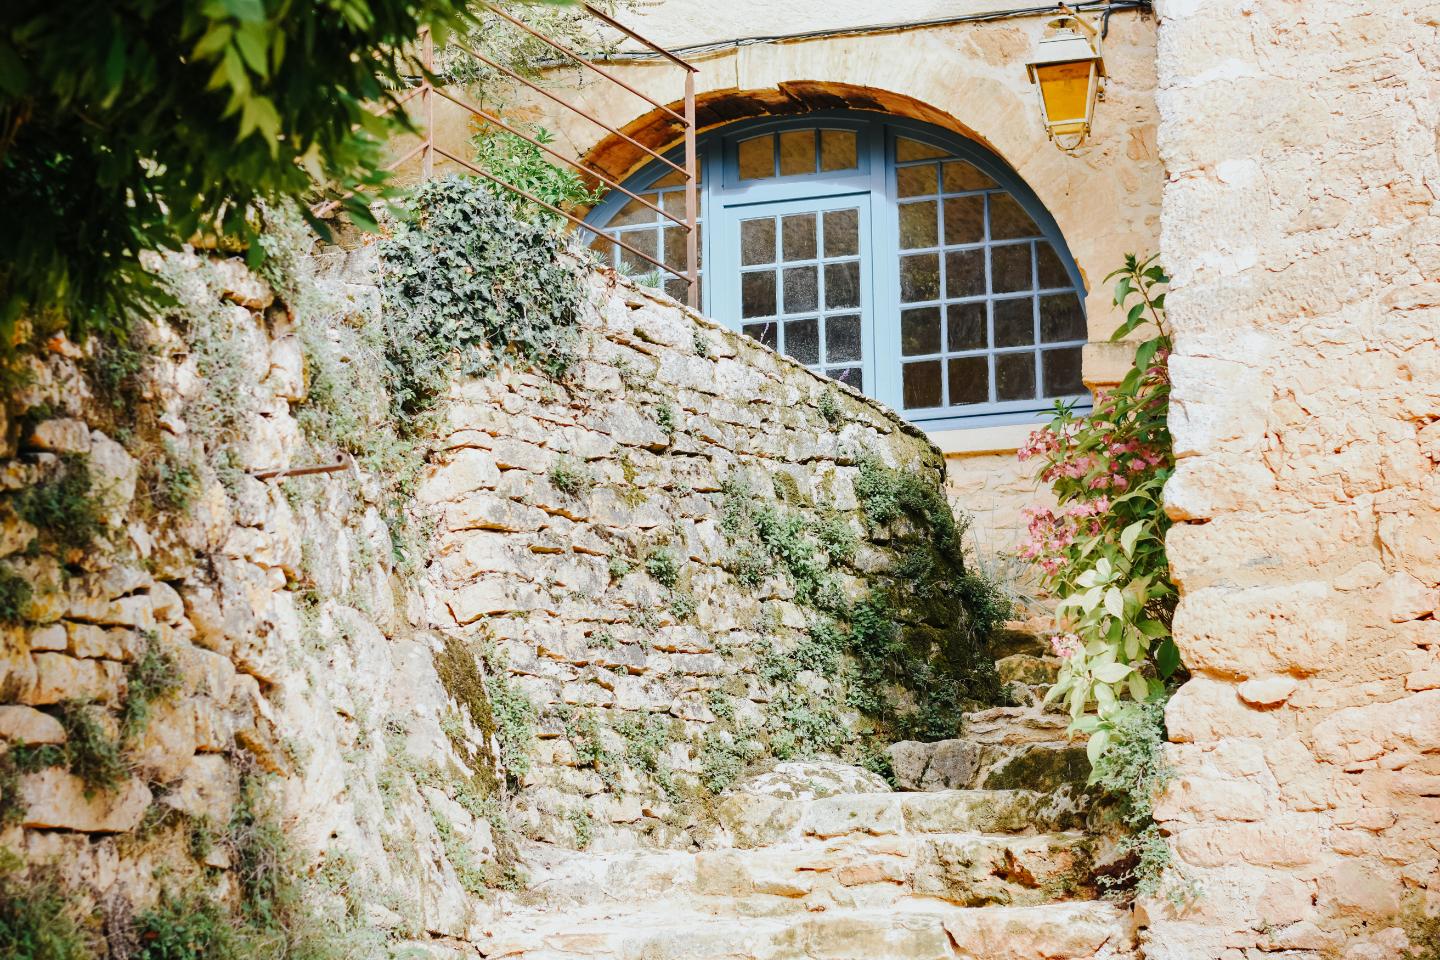 Hôte GreenGo: MAISON CISTUS - Maison d'hôtes de charme - Suites et gîte avec terrasses privées - Proche de Sarlat - Image 20